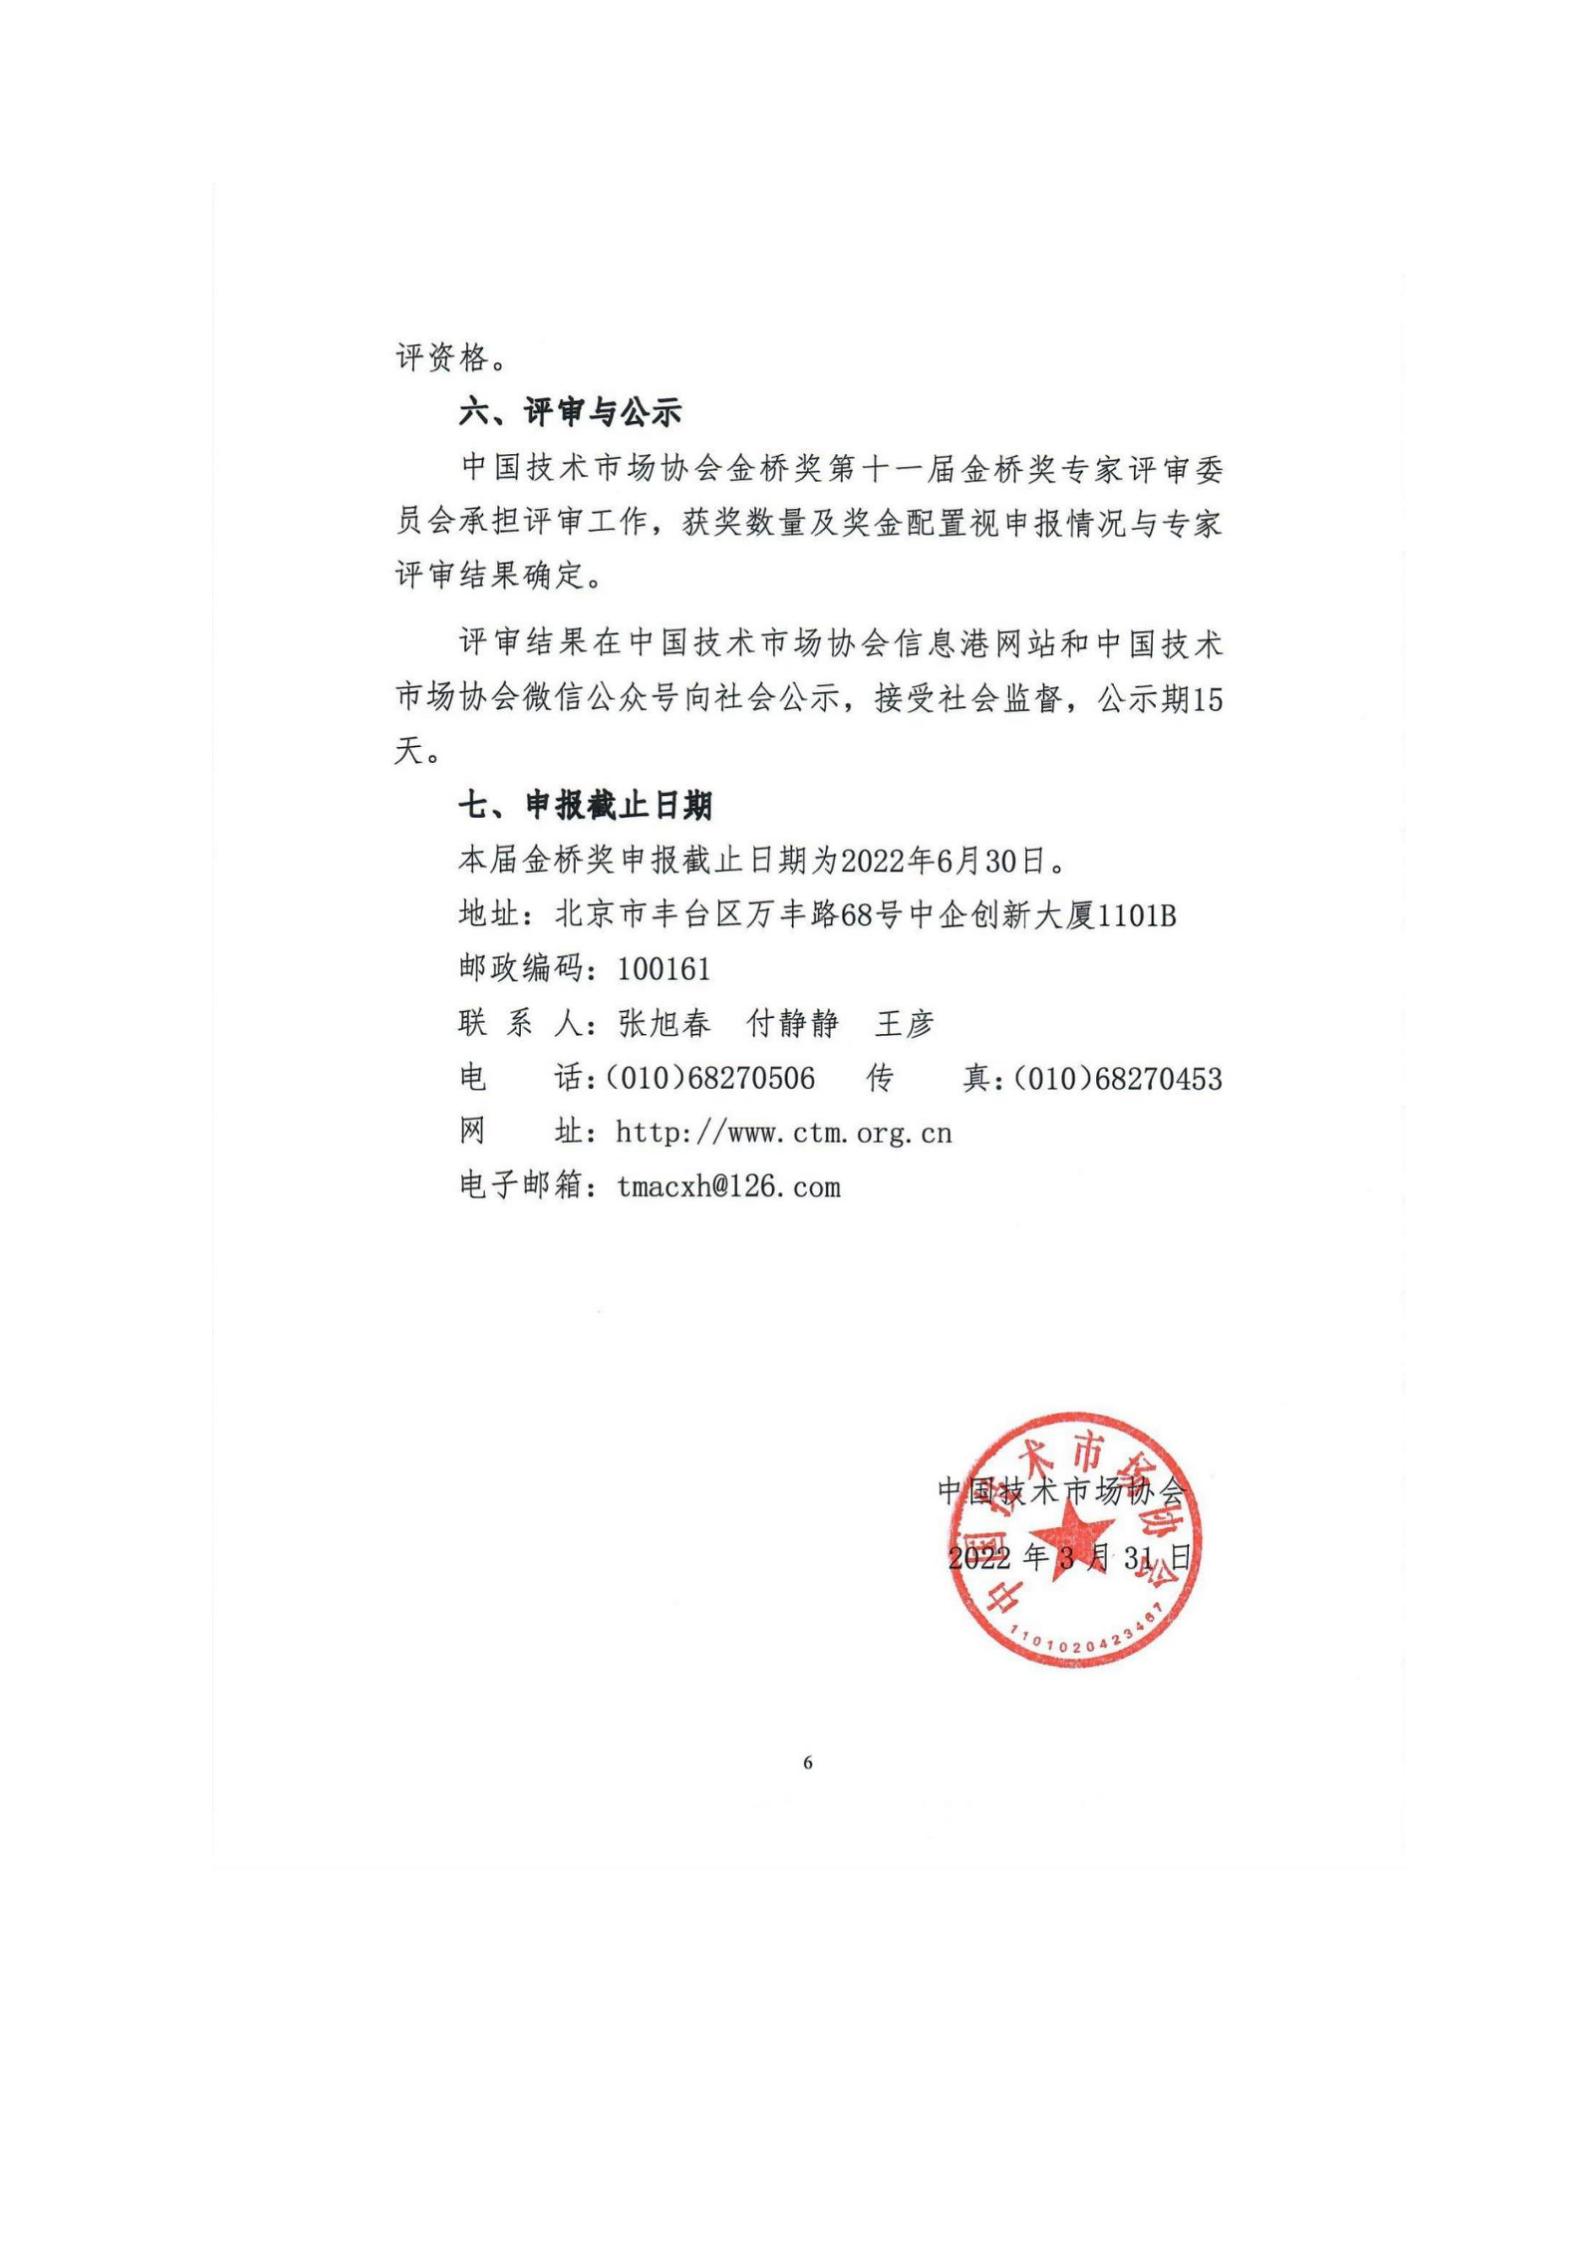 关于组织申报第十一届中国技术市场协会金桥奖表彰奖励的通知_08.jpg